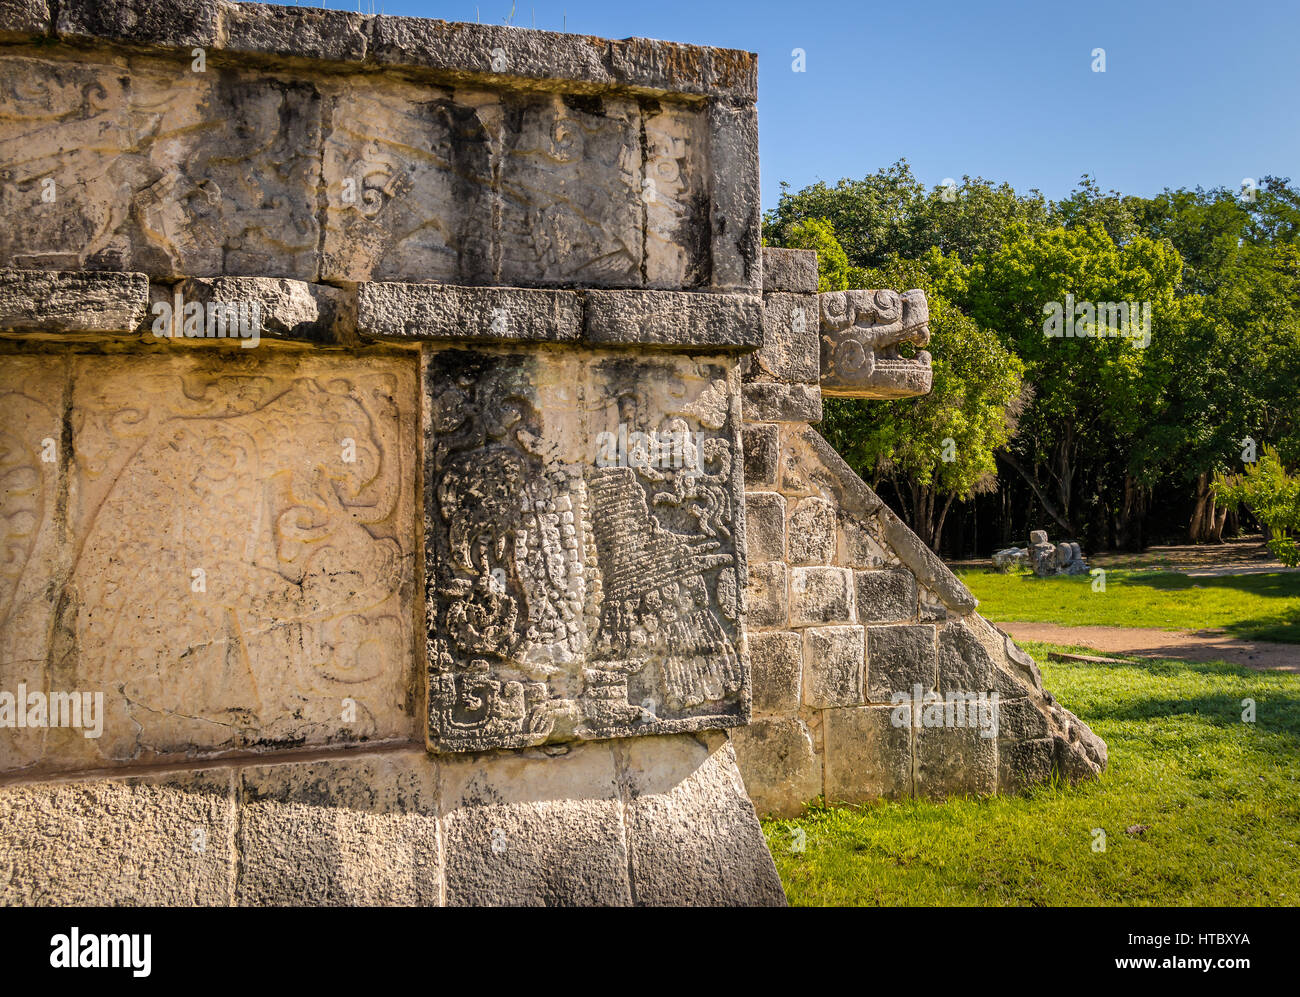 Jaguar-Köpfe der Venus-Plattform in alten Maya-Ruinen von Chichen Itza - Yucatan, Mexiko Stockfoto